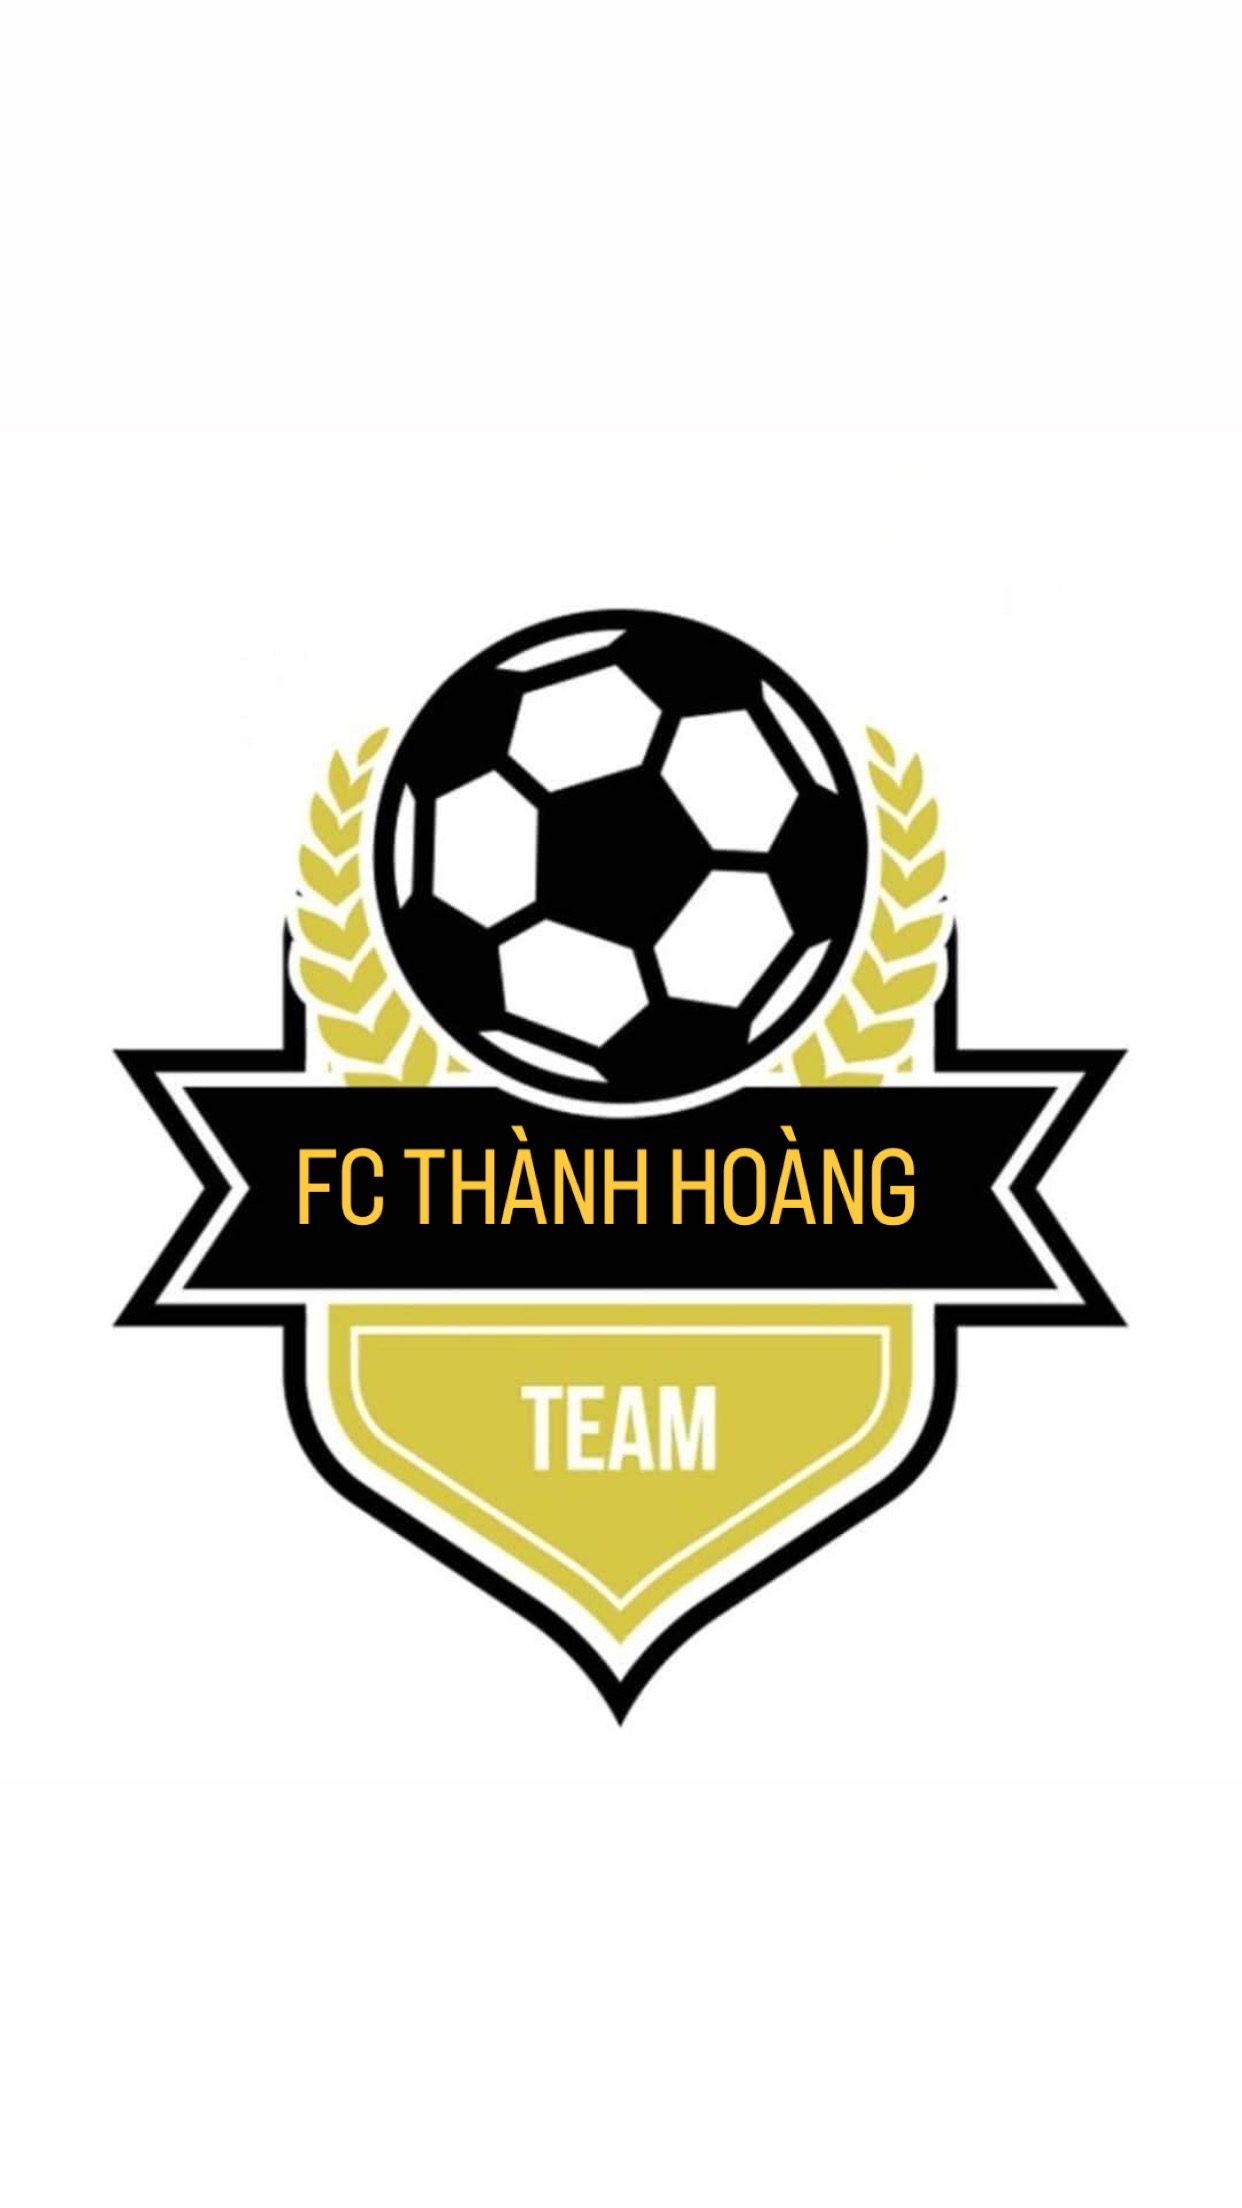 FC THÀNH HOÀNG